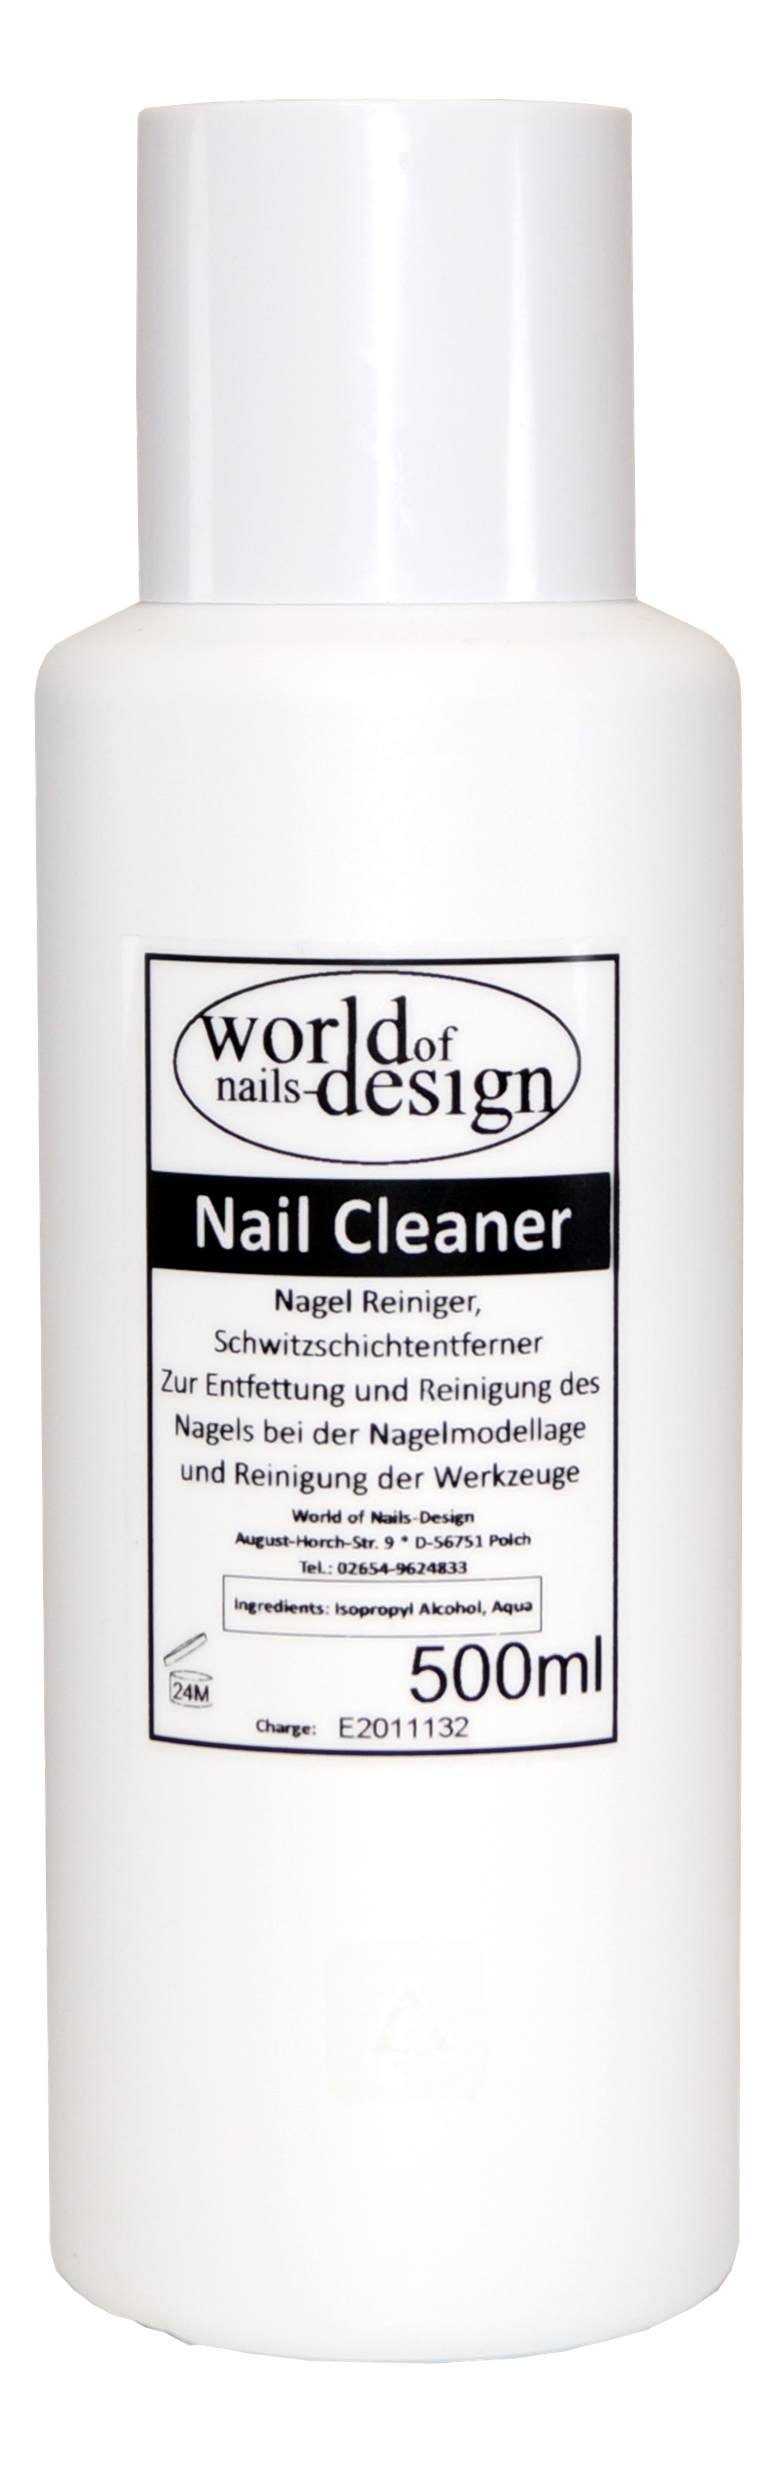 World of Gelnägel 500ml Nagelreiniger Nail Cleaner Für Nagellackentferner Cleaner Nails-Design